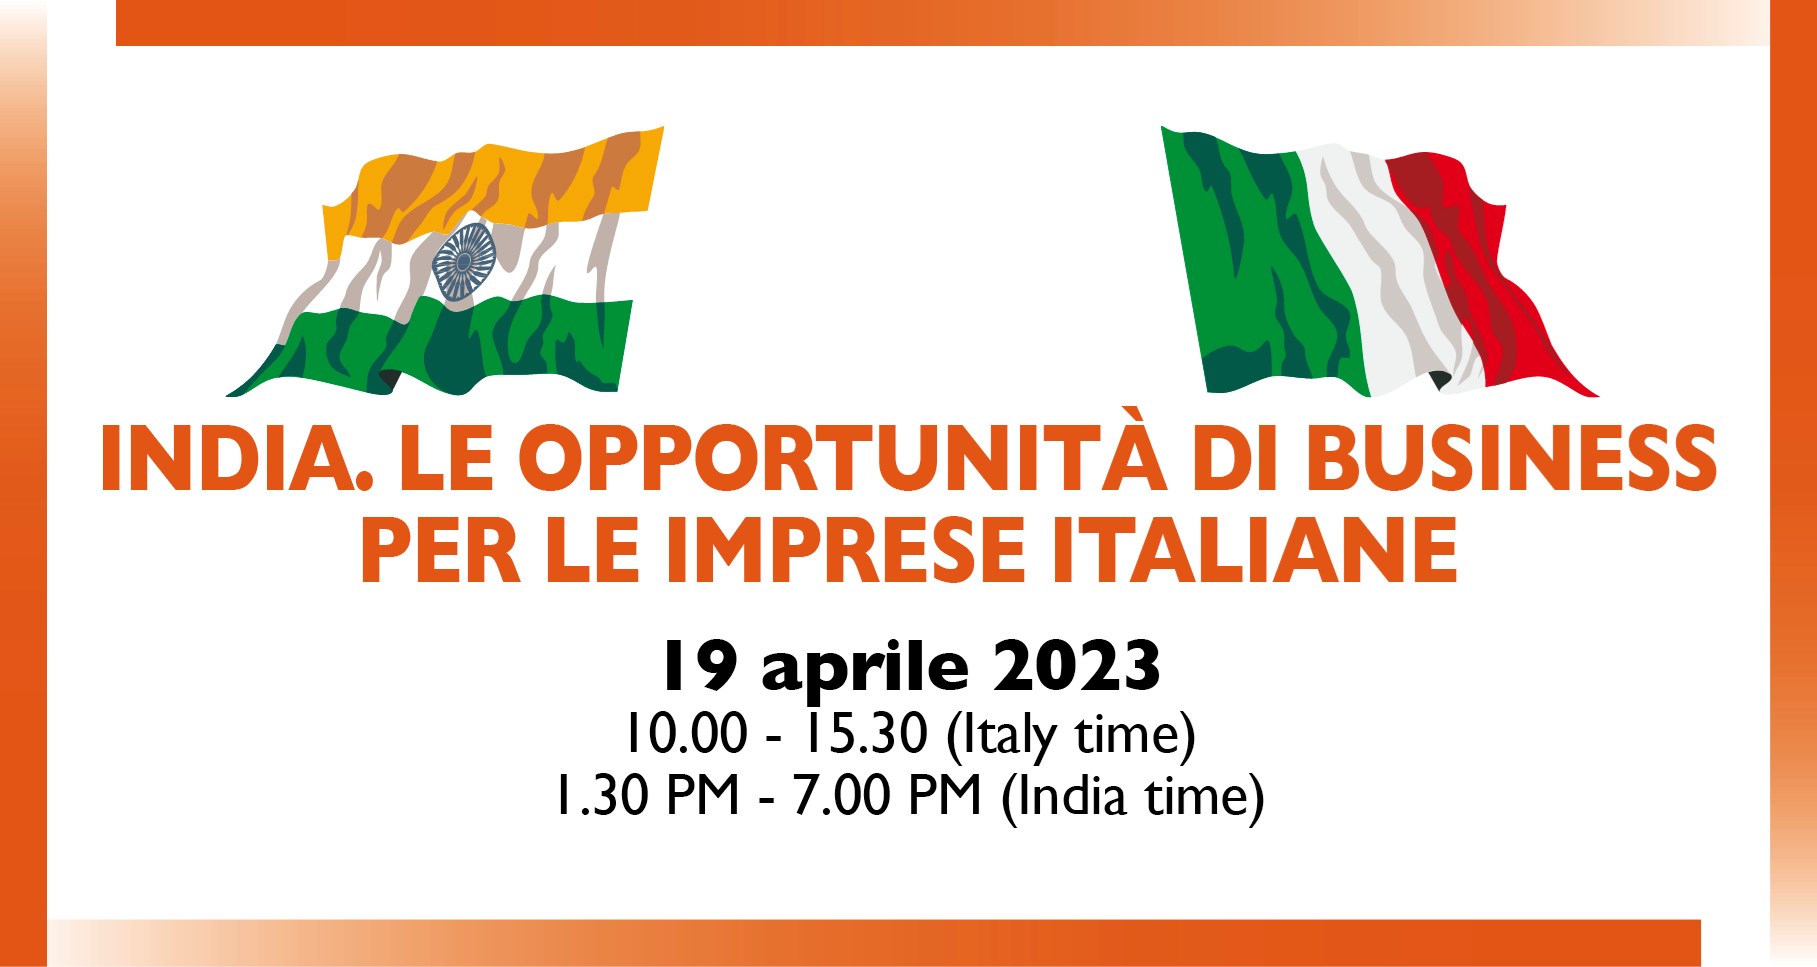 India. Le opportunità di Business per le Imprese Italiane 2023